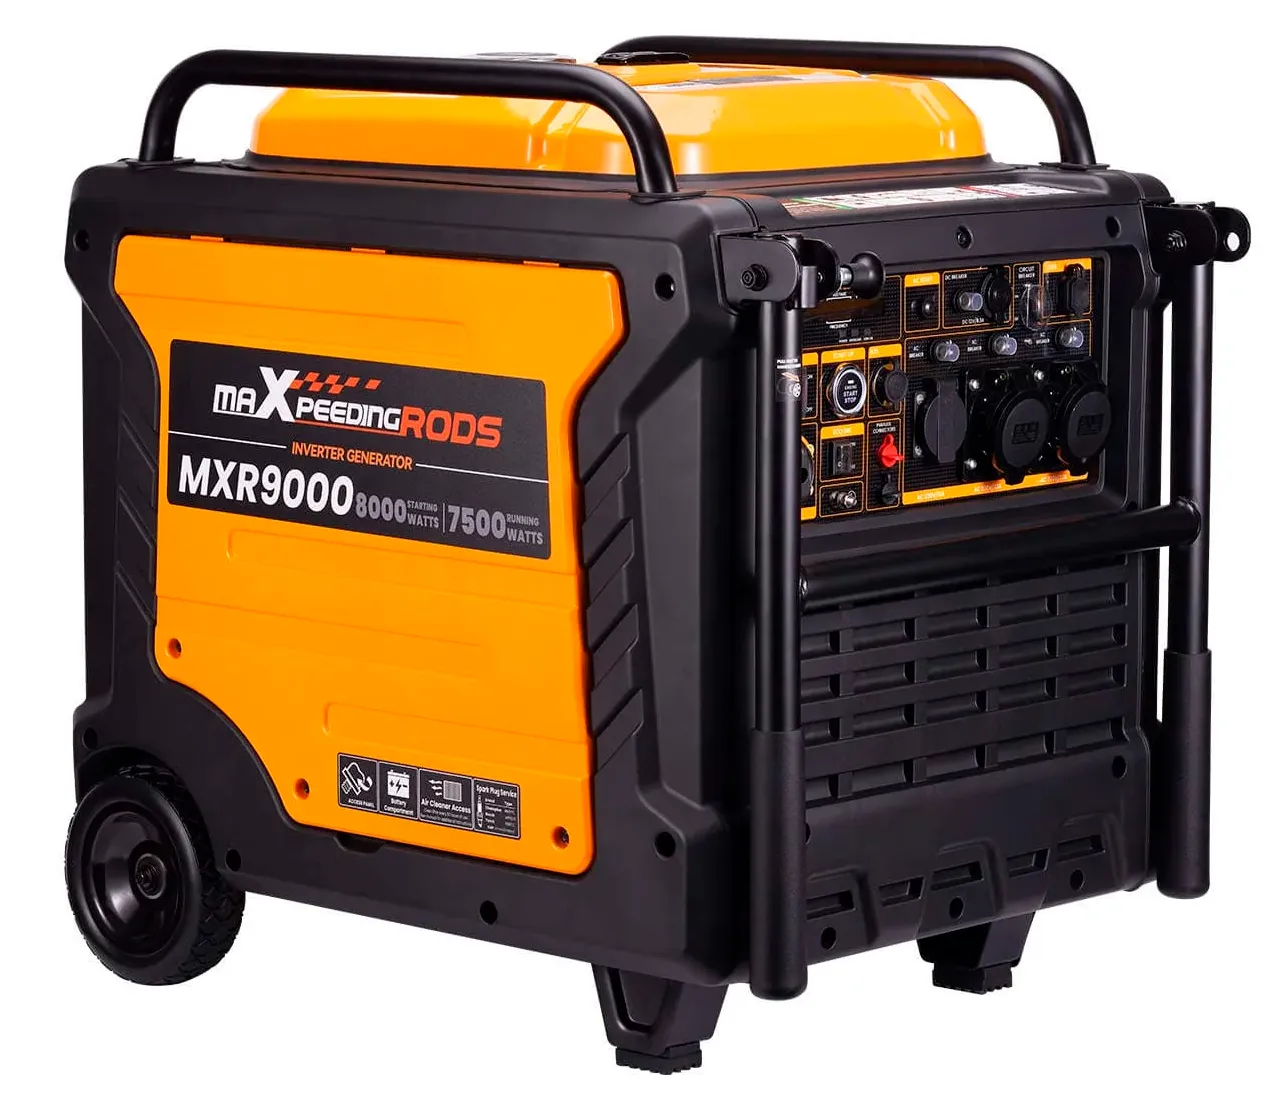   MaXpeedingRods MXR9000